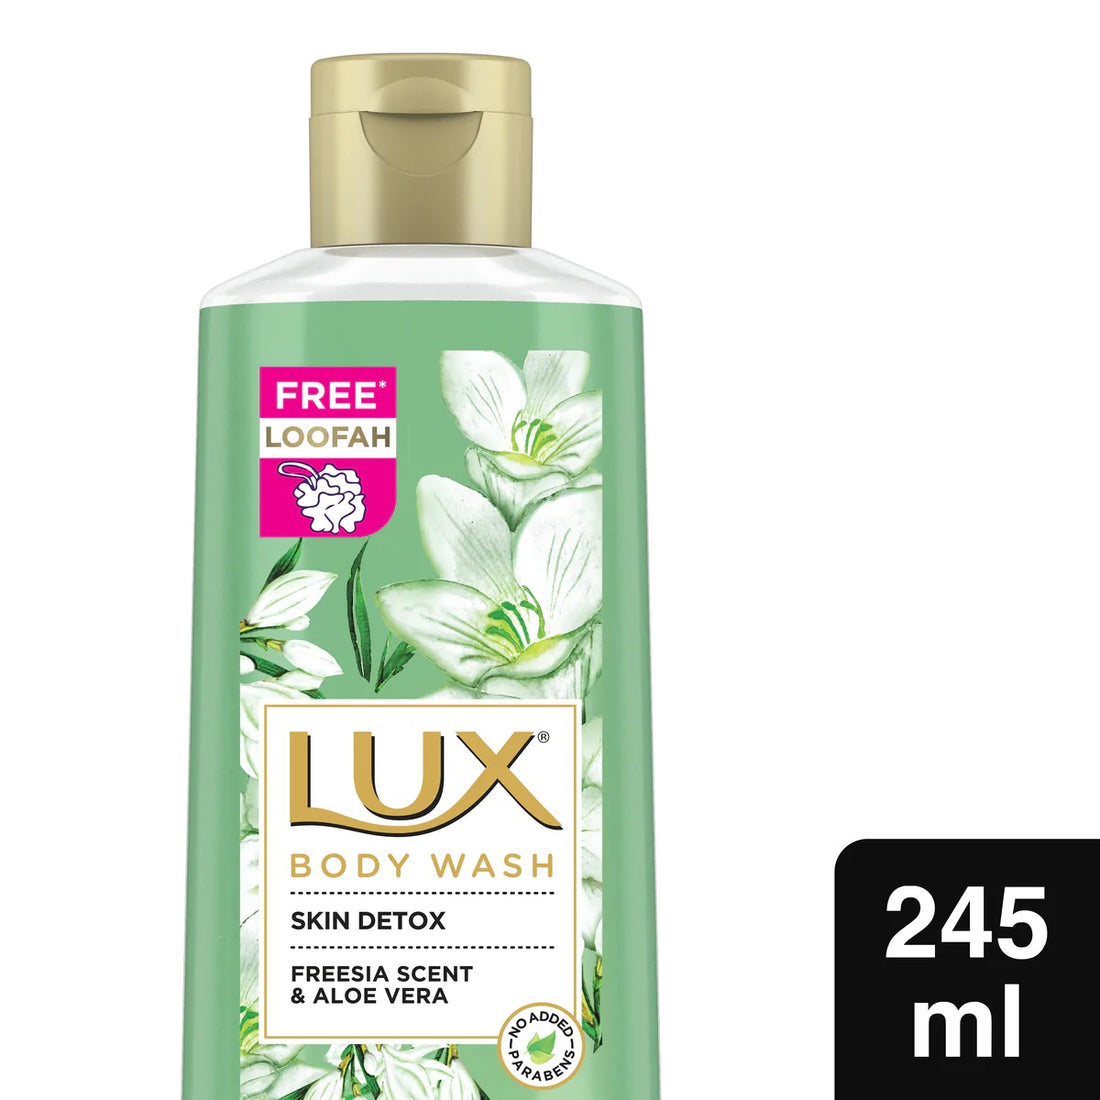 LUX Freesia Scent and Aloe Vera Body Wash (245ml)